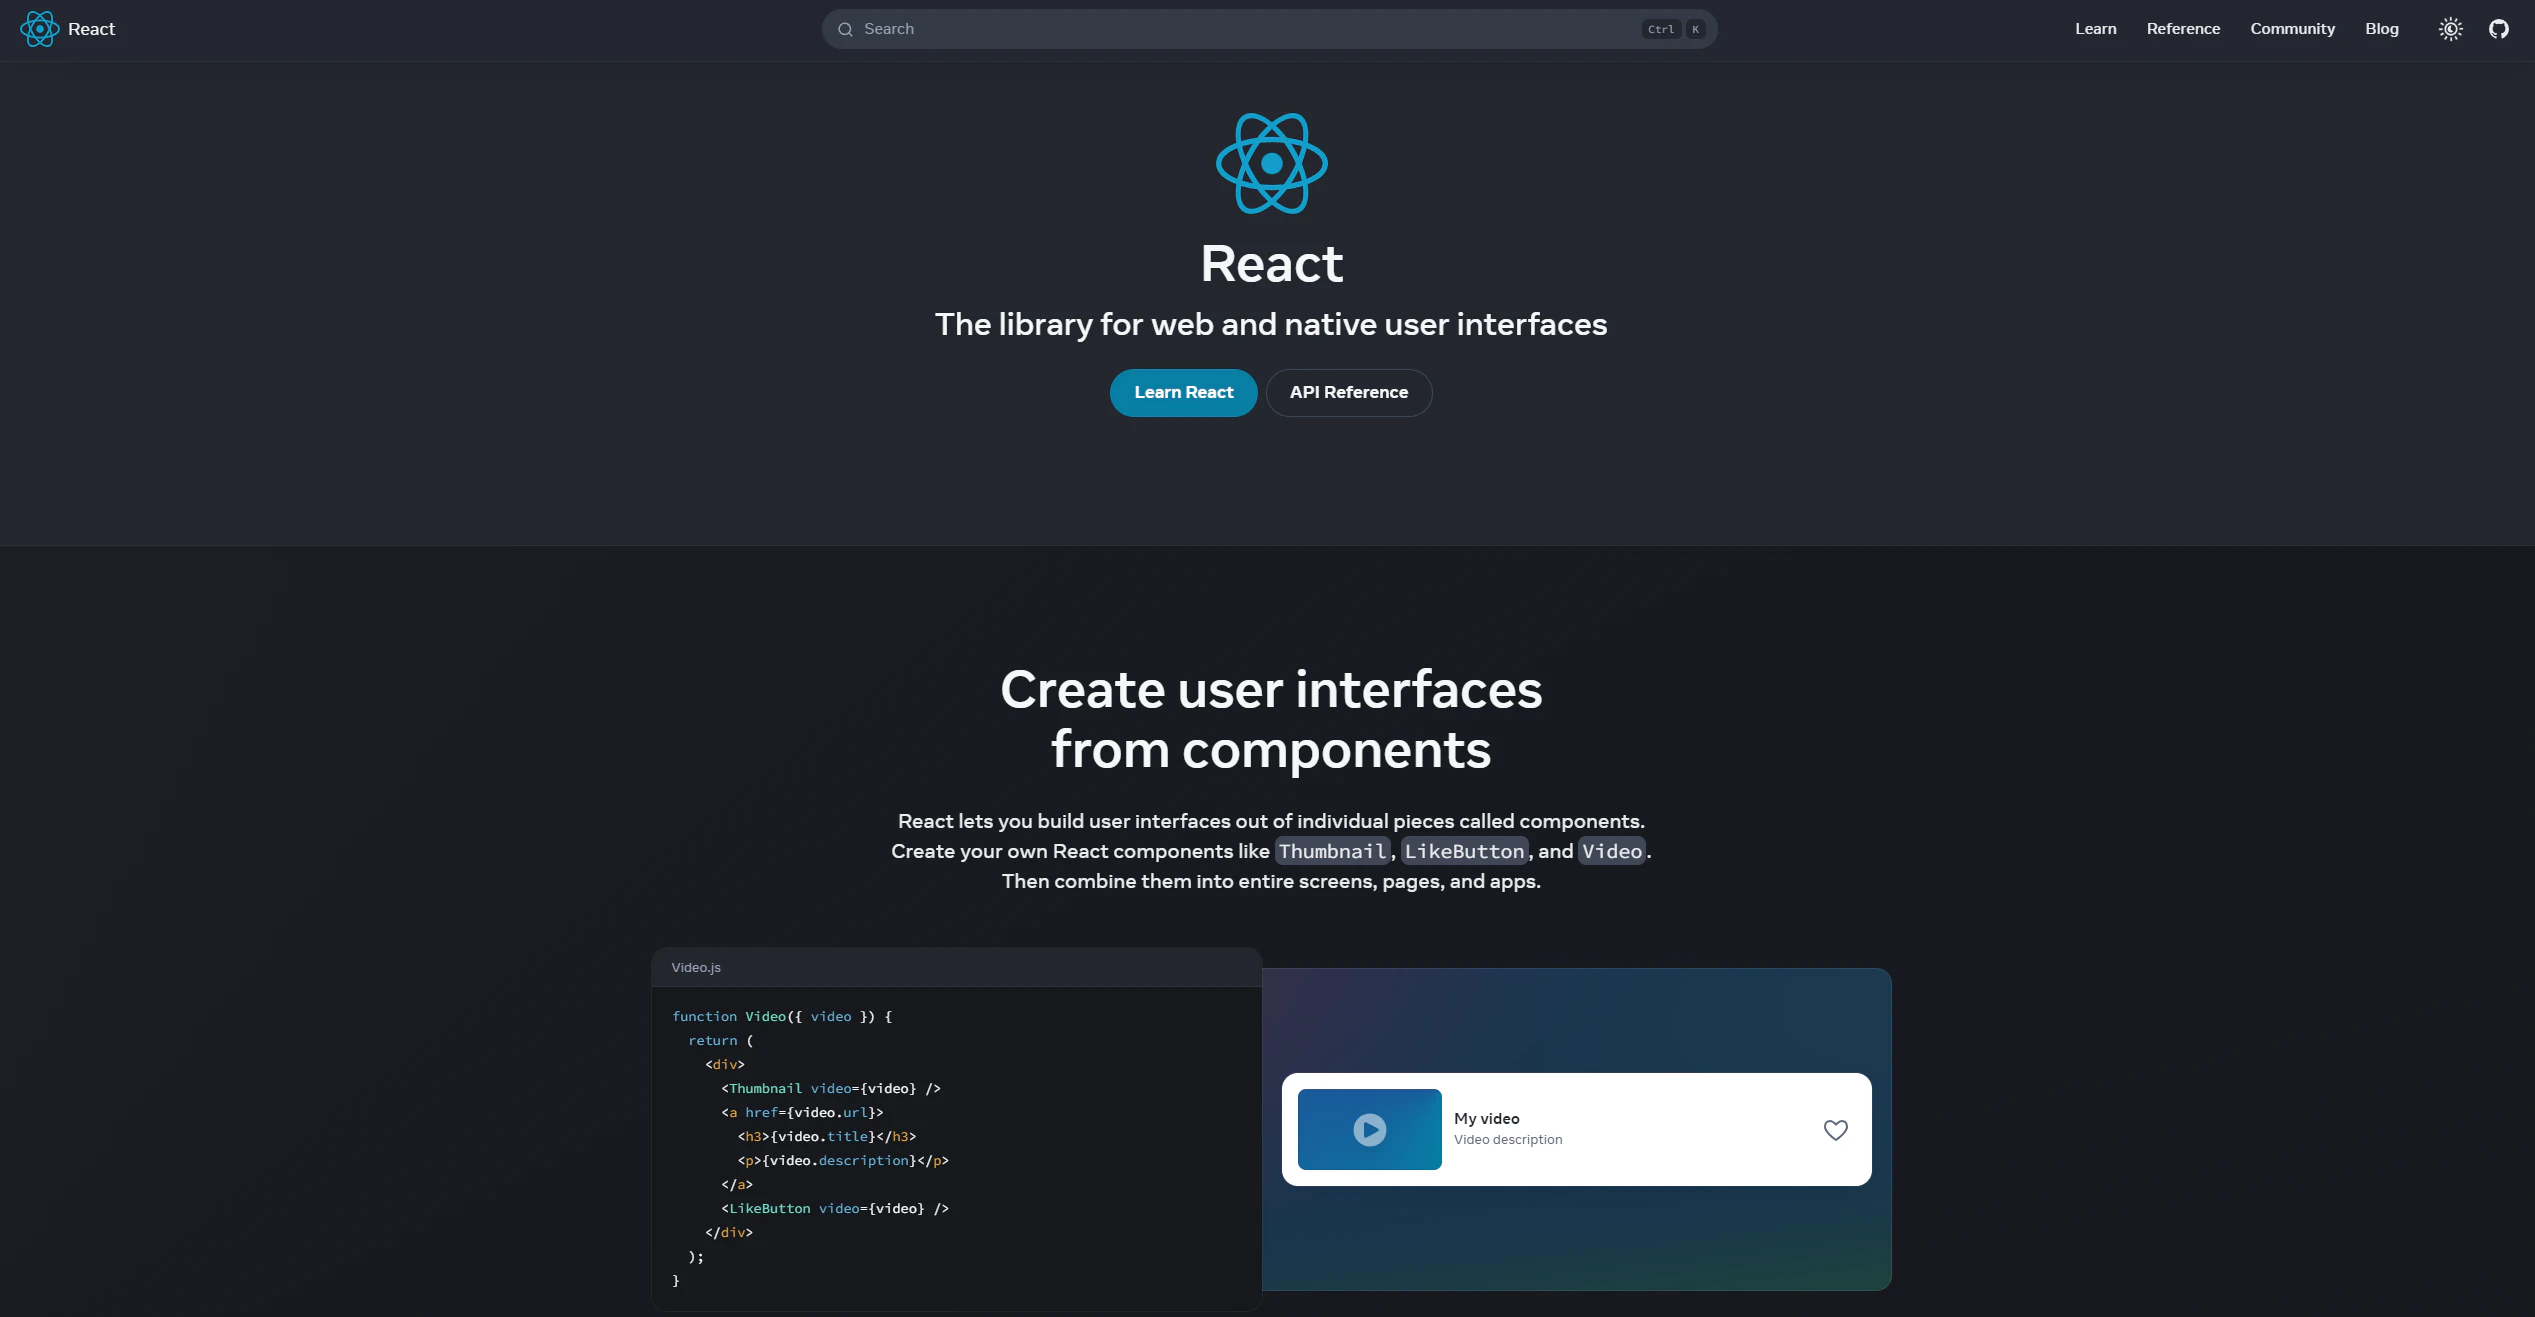 react homepage